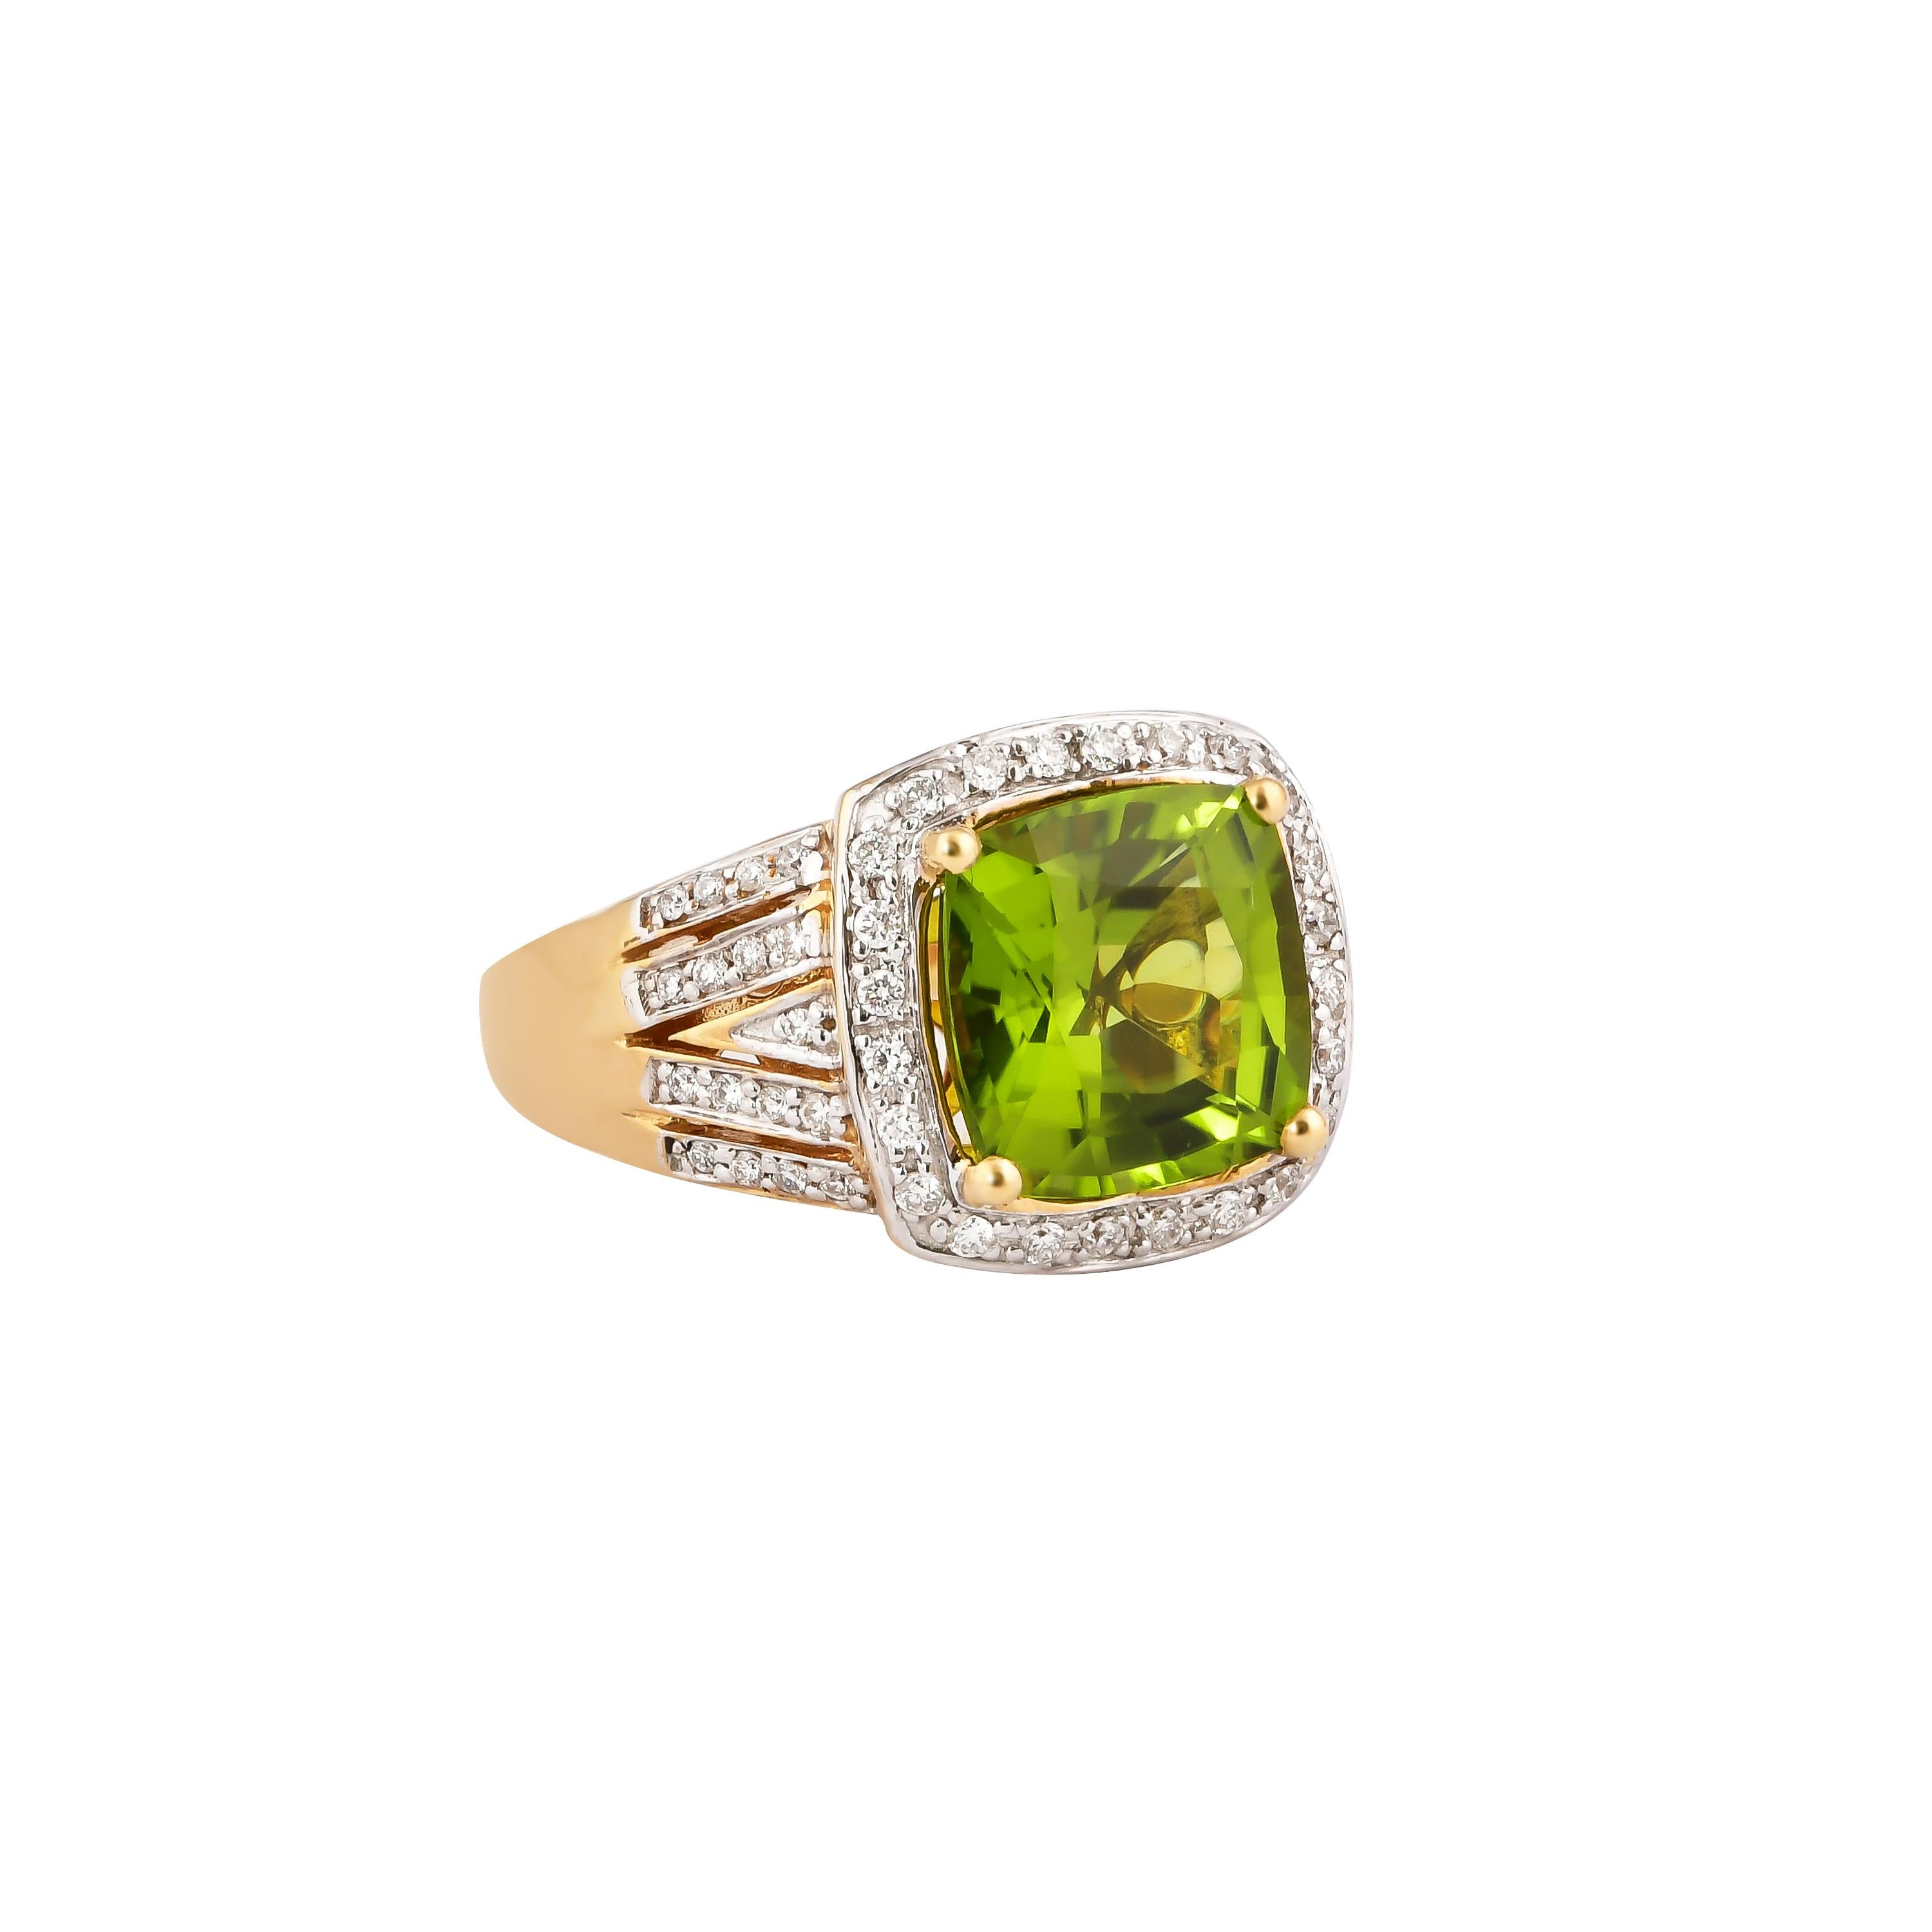 Diese Kollektion bietet eine Reihe von hübschen Peridot-Ringen! Die mit Diamanten besetzten Ringe sind aus Gelbgold gefertigt und bieten einen lebendigen und frischen Look. 

Klassischer Peridot-Ring aus 18 Karat Gelbgold mit Diamanten. 

Peridot: